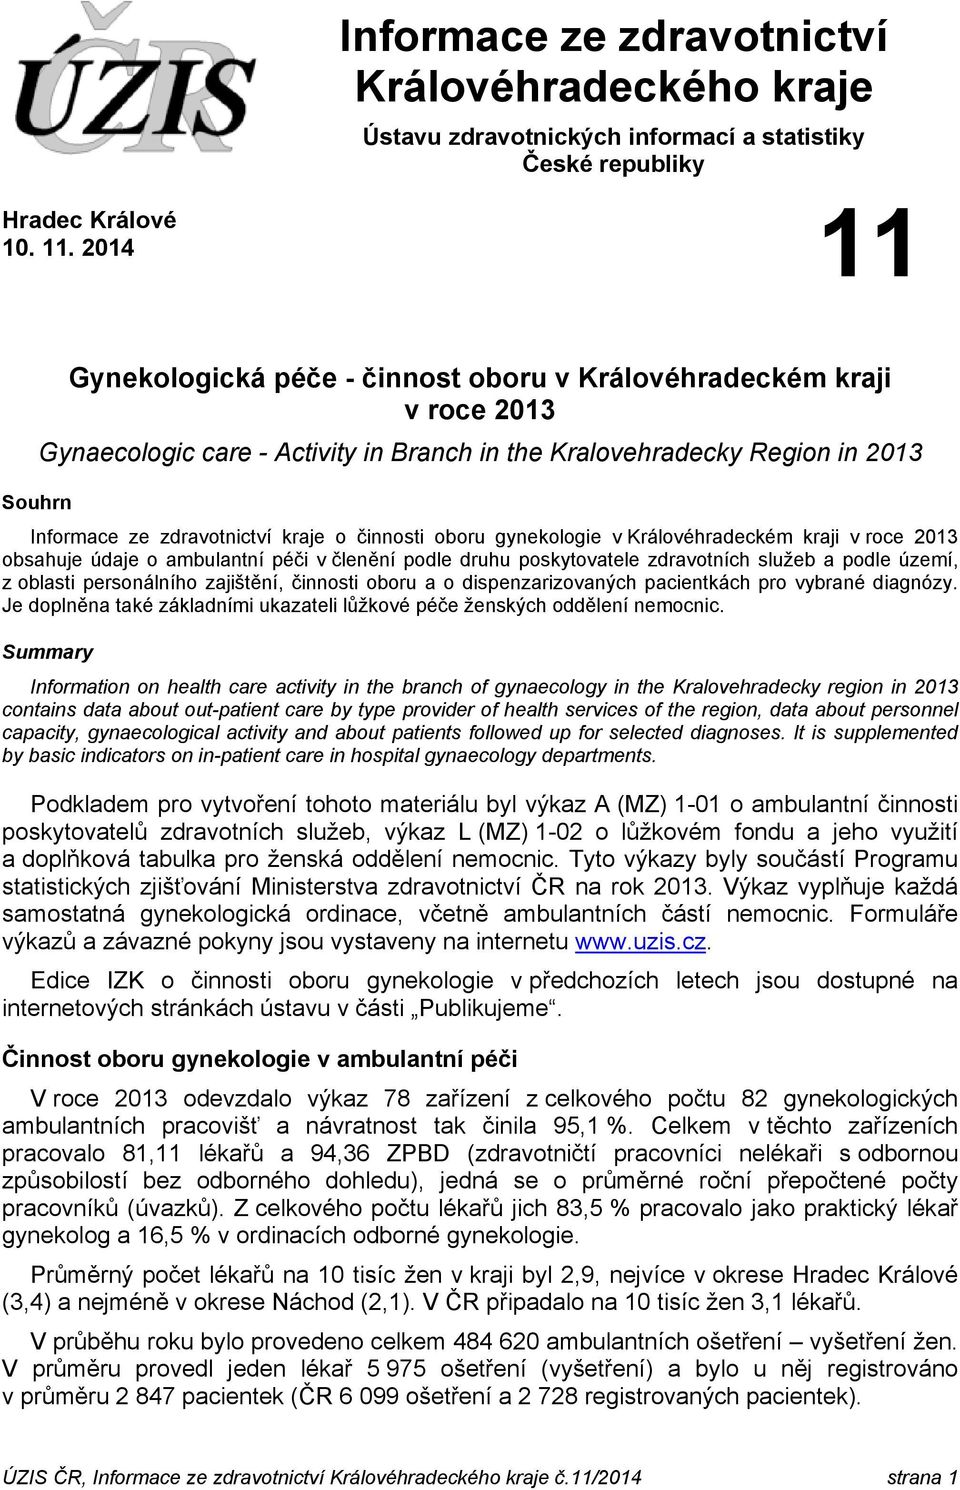 činnosti oboru gynekologie v Královéhradeckém kraji v roce 2013 obsahuje údaje o ambulantní péči v členění podle druhu poskytovatele zdravotních služeb a podle území, z oblasti personálního